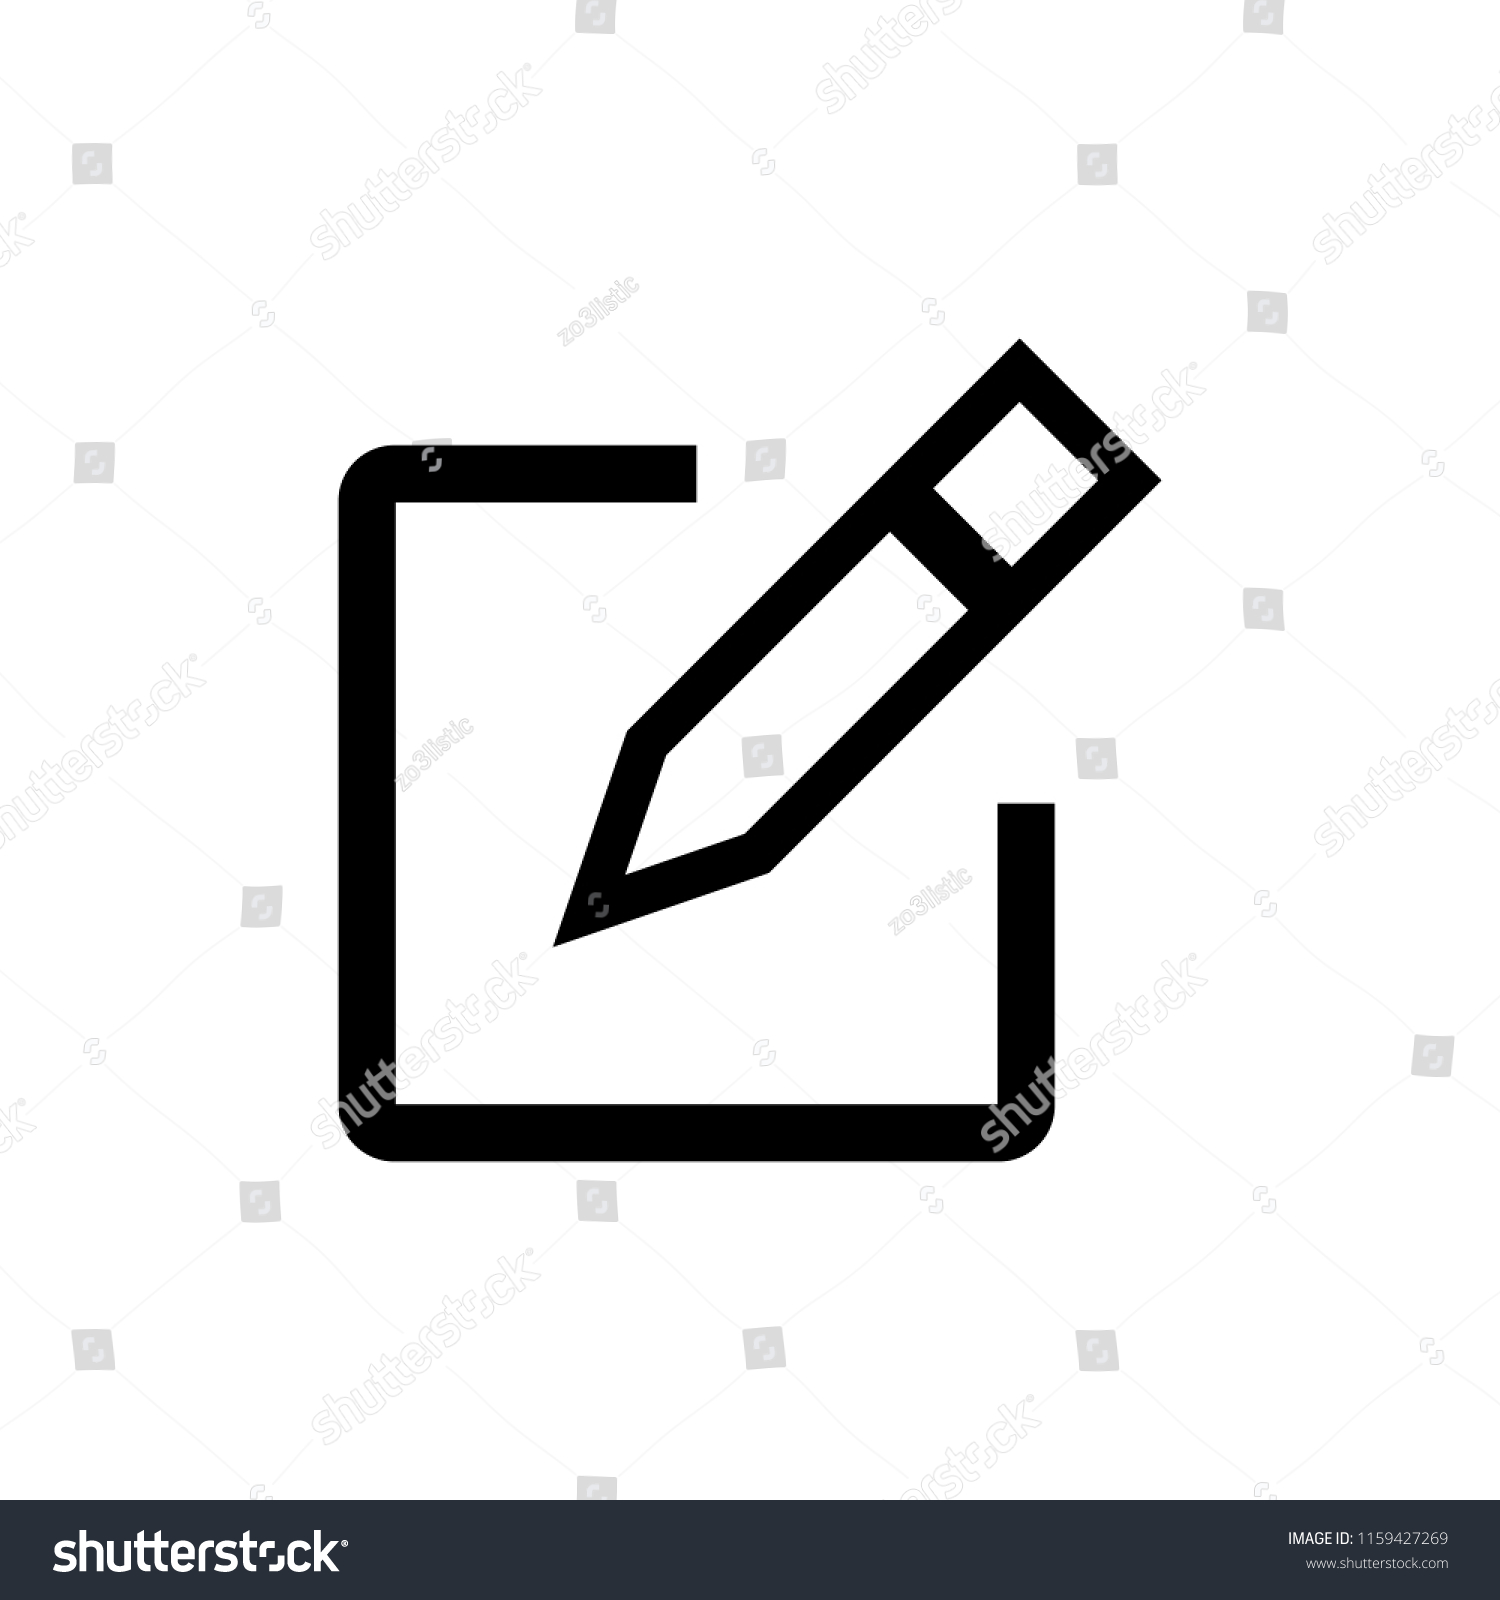 Edit icon vector. Pencil icon. sign up Icon vector #1159427269